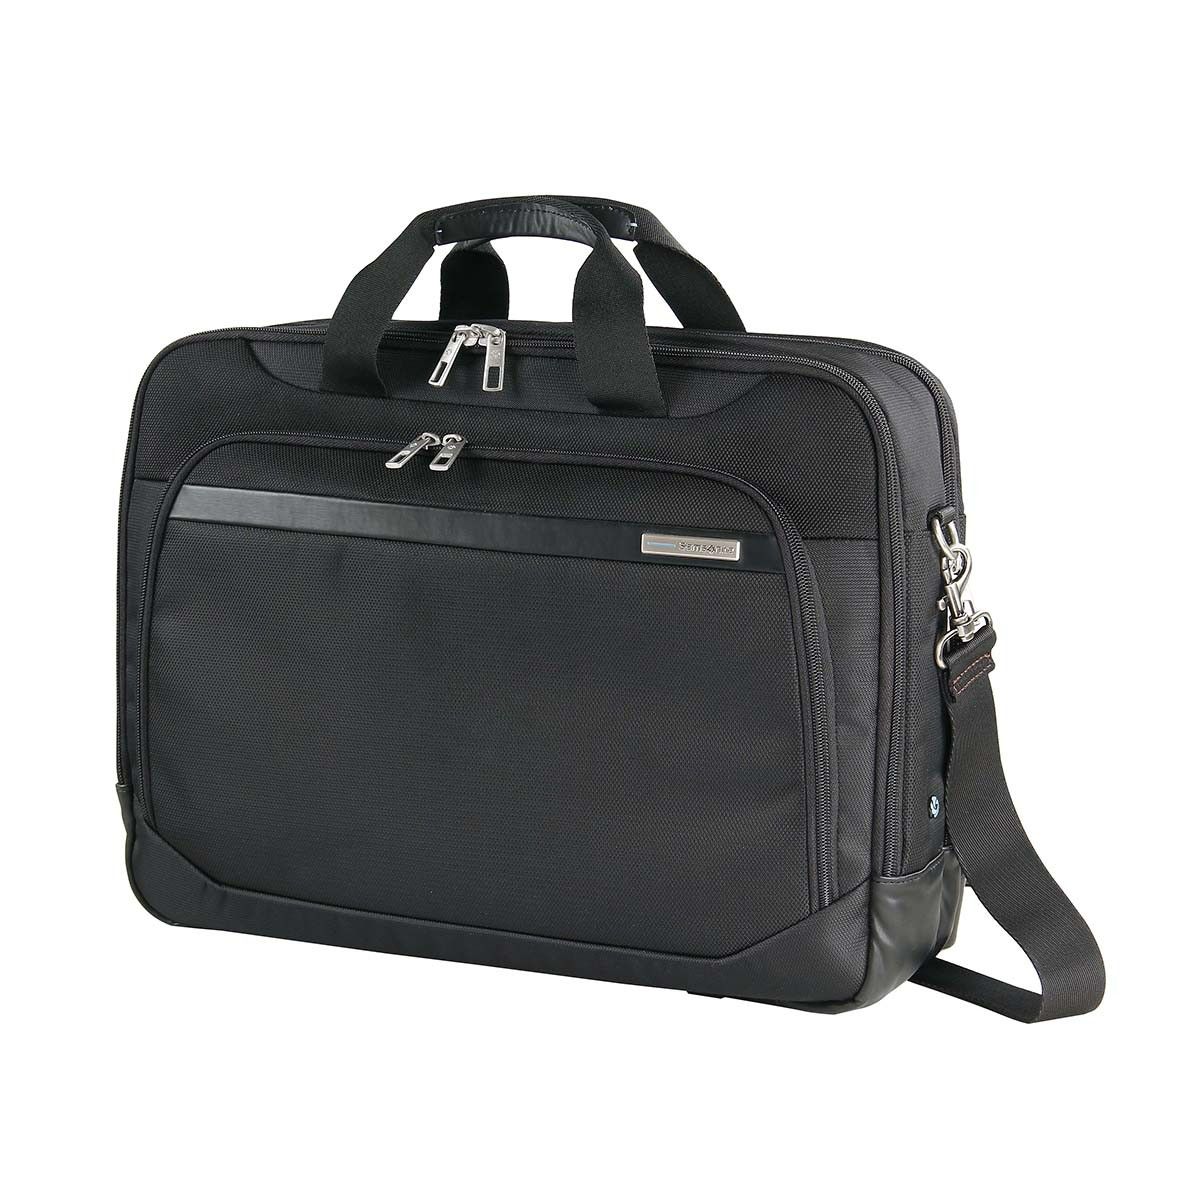 Buy Samsonite Laptop Bag For Men Women | Vectura 39 cms Polyester ...